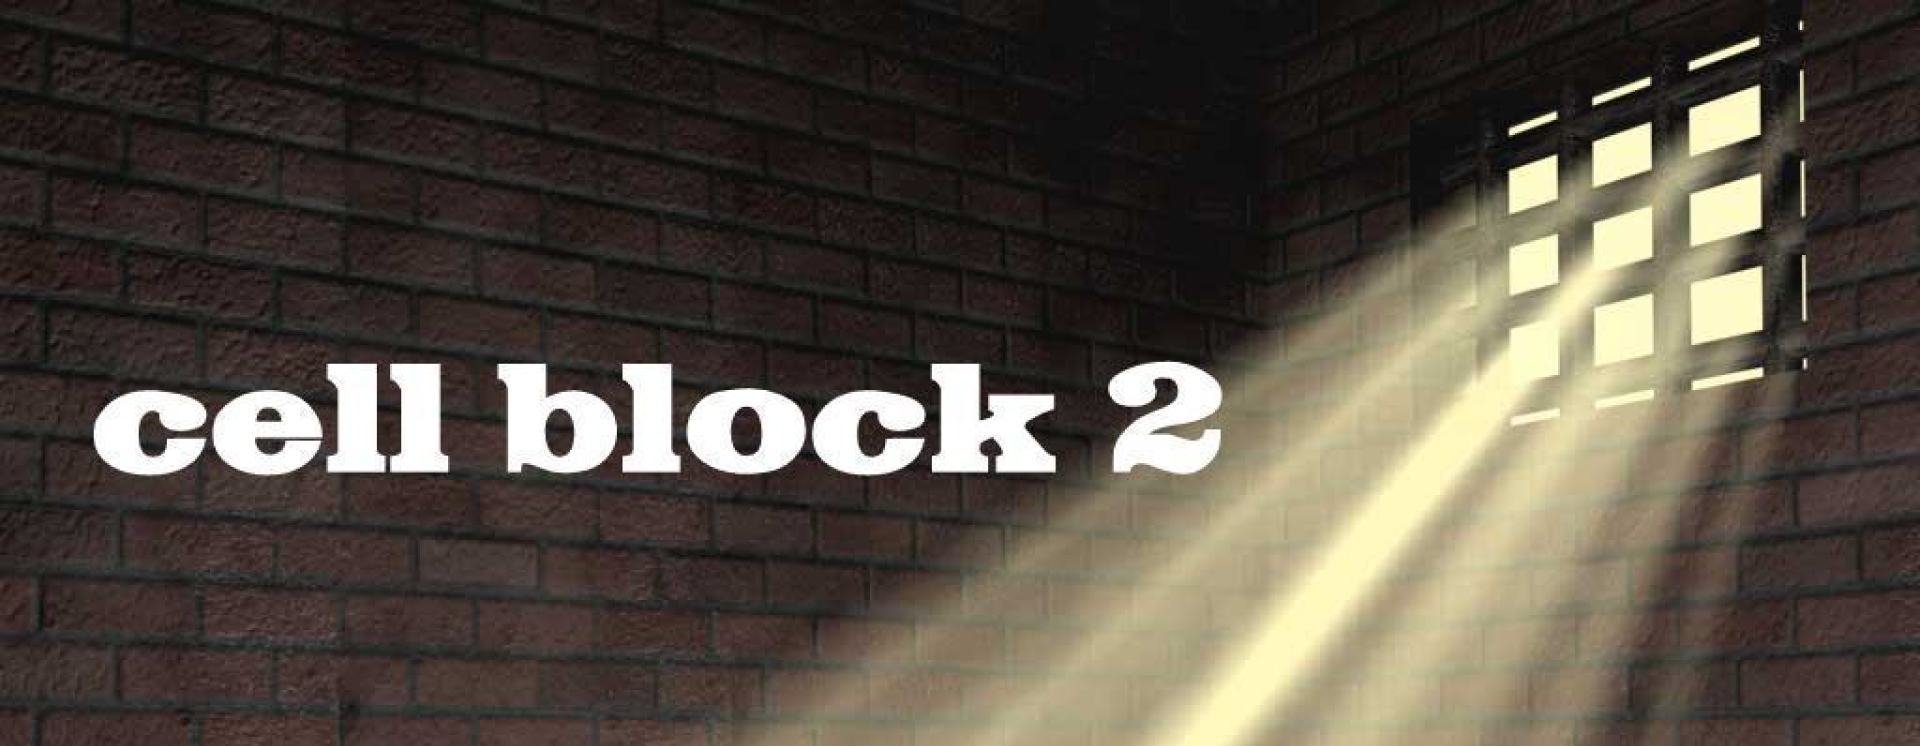 Cell block logo copy